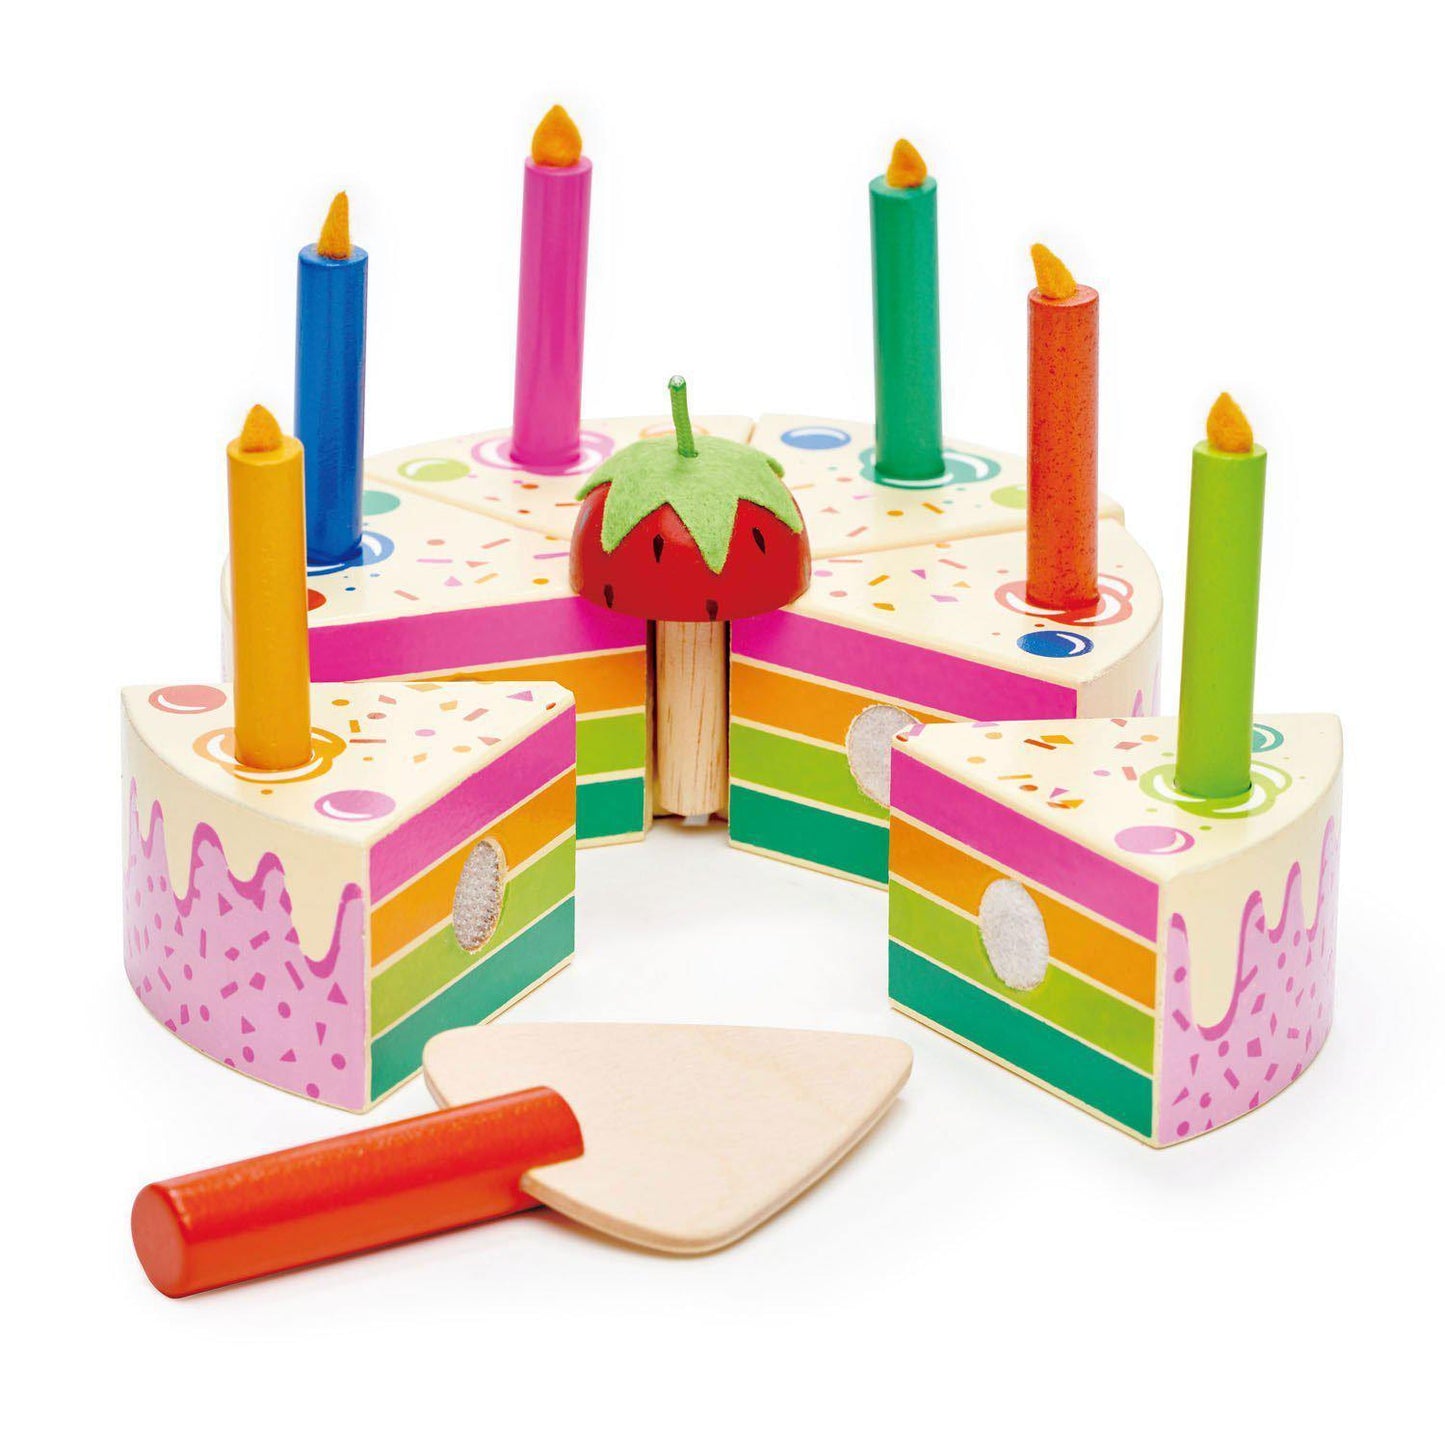 Szivárvány szülinapi torta, prémium minőségű fából- Rainbow Birthday Cake - 14 darab - Tender Leaf Toys-Tender Leaf Toys-3-Játszma.ro - A maradandó élmények boltja